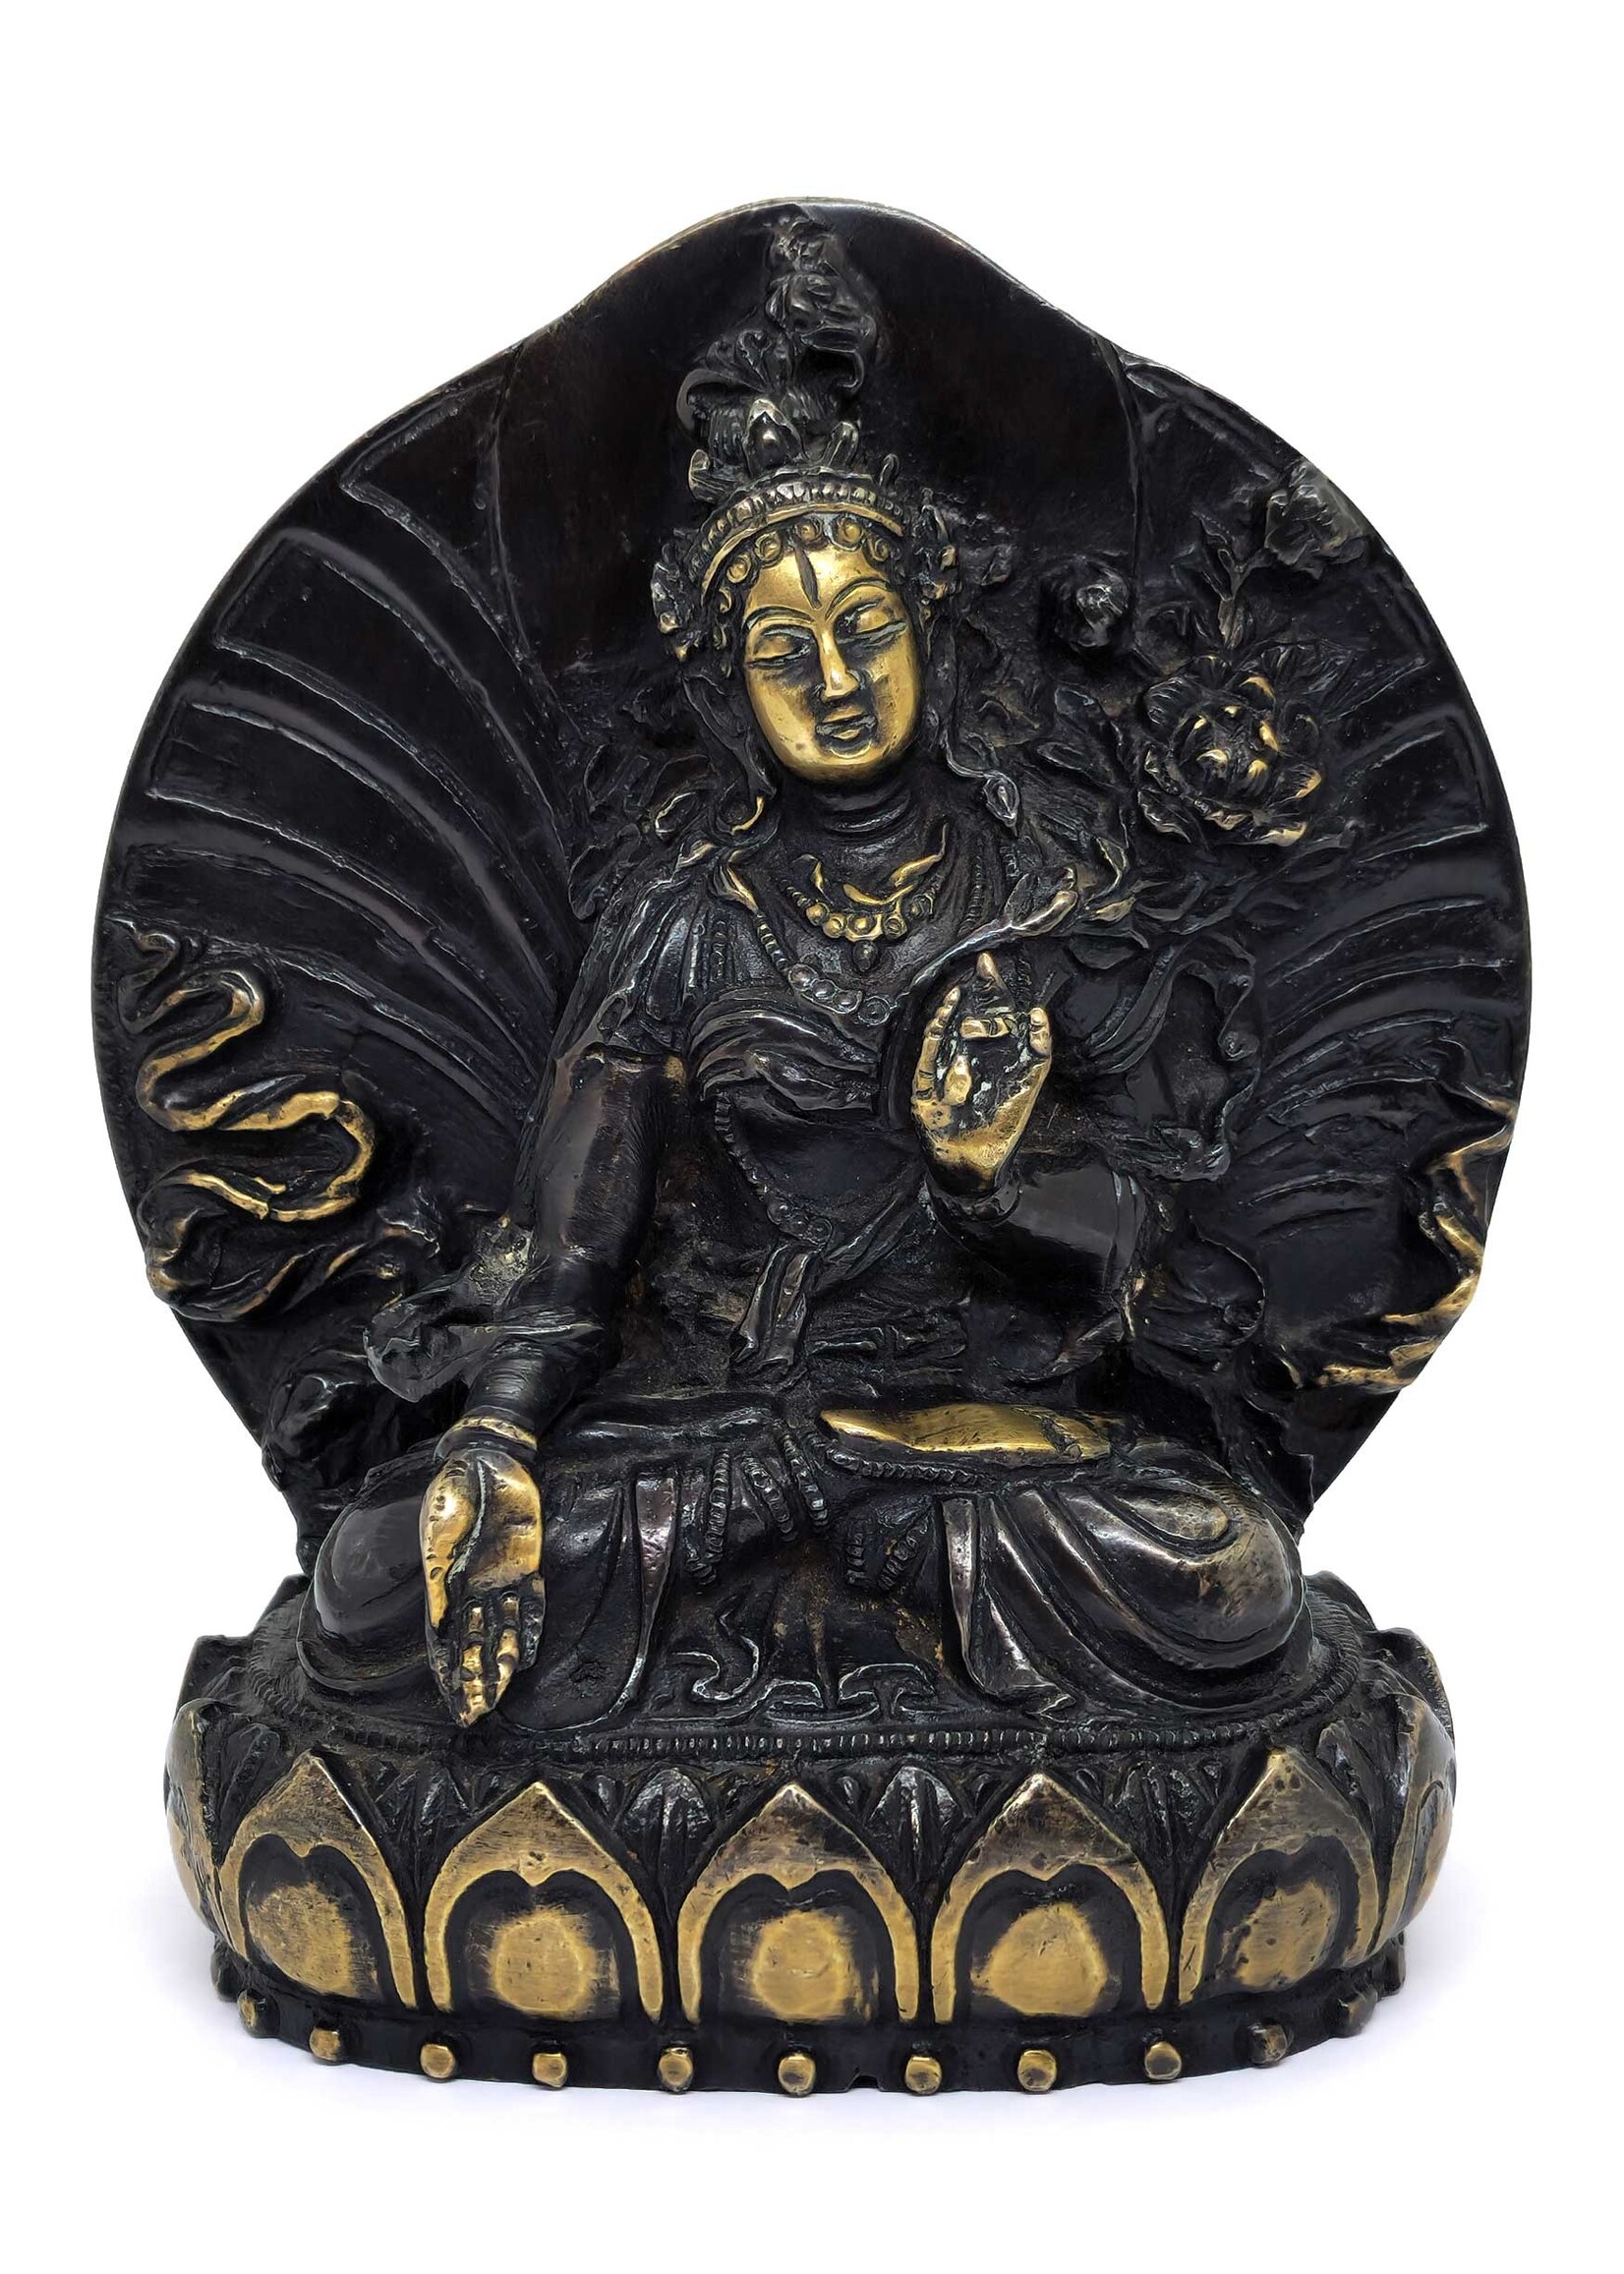 Handgefertigte tibetische Weisse Tara-Statue aus hochwertigem Messing, 14.5 cm